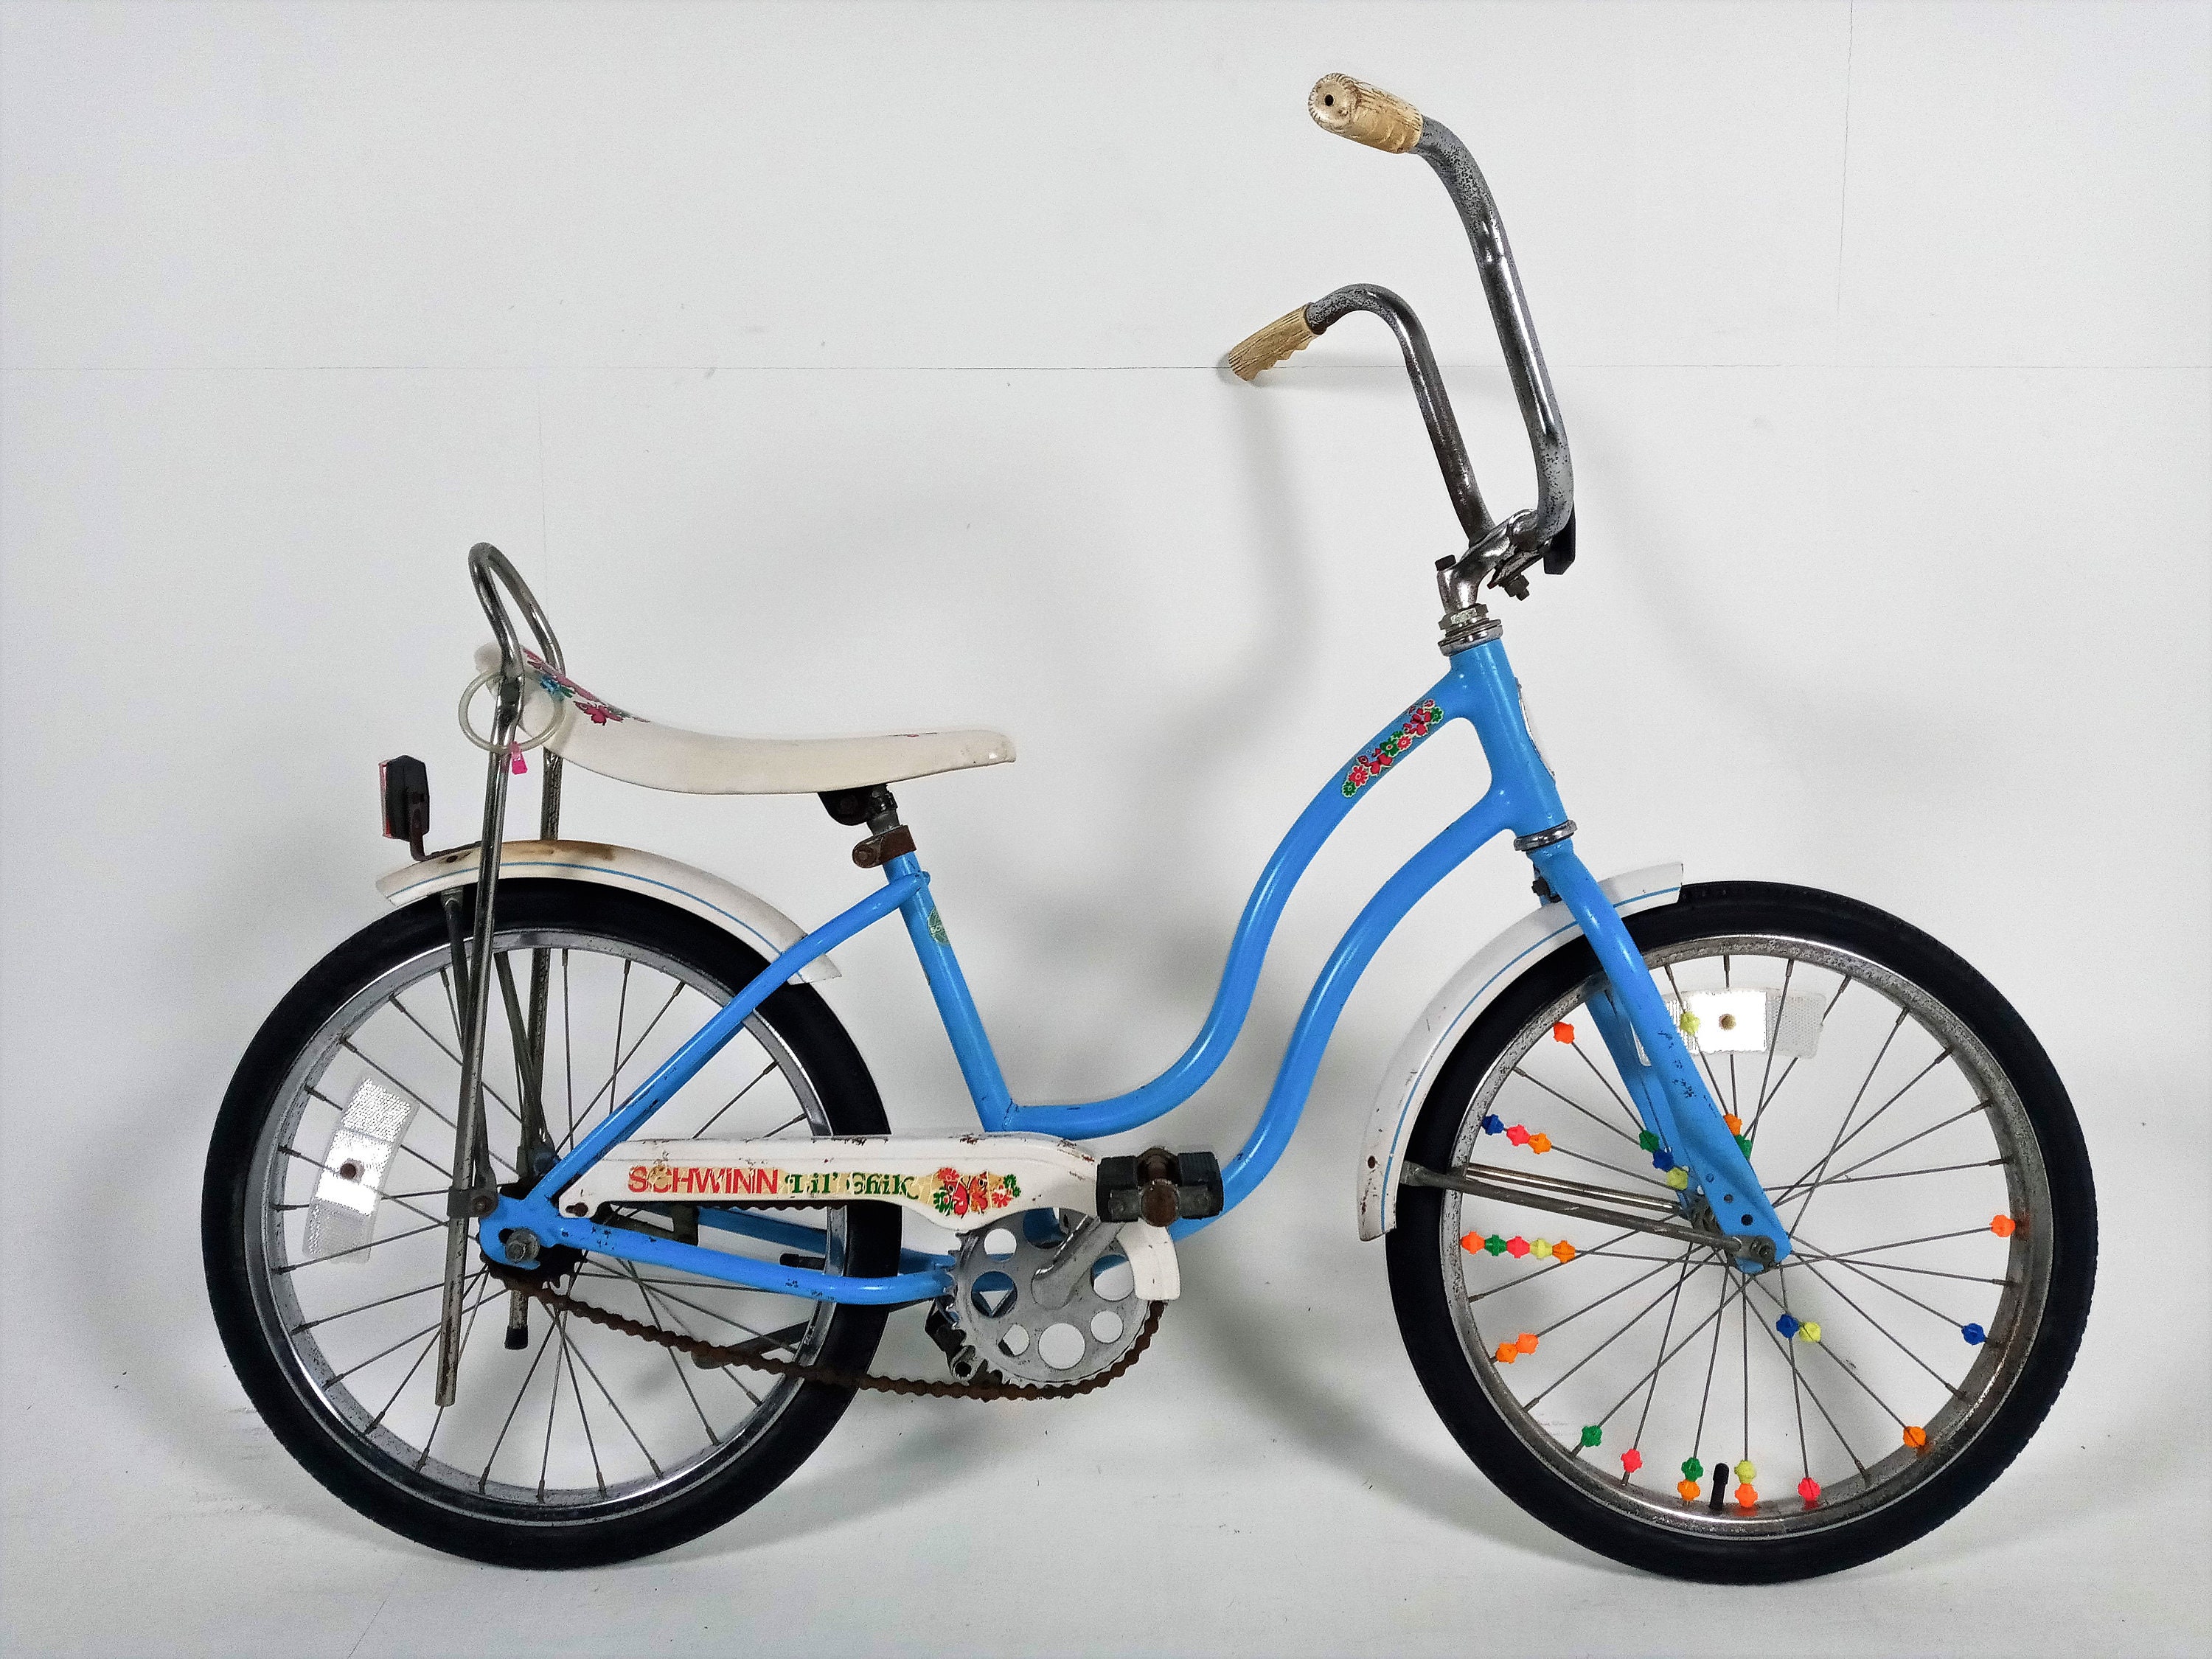 Vintage Schwinn Lil Chik Bicycle   Etsy